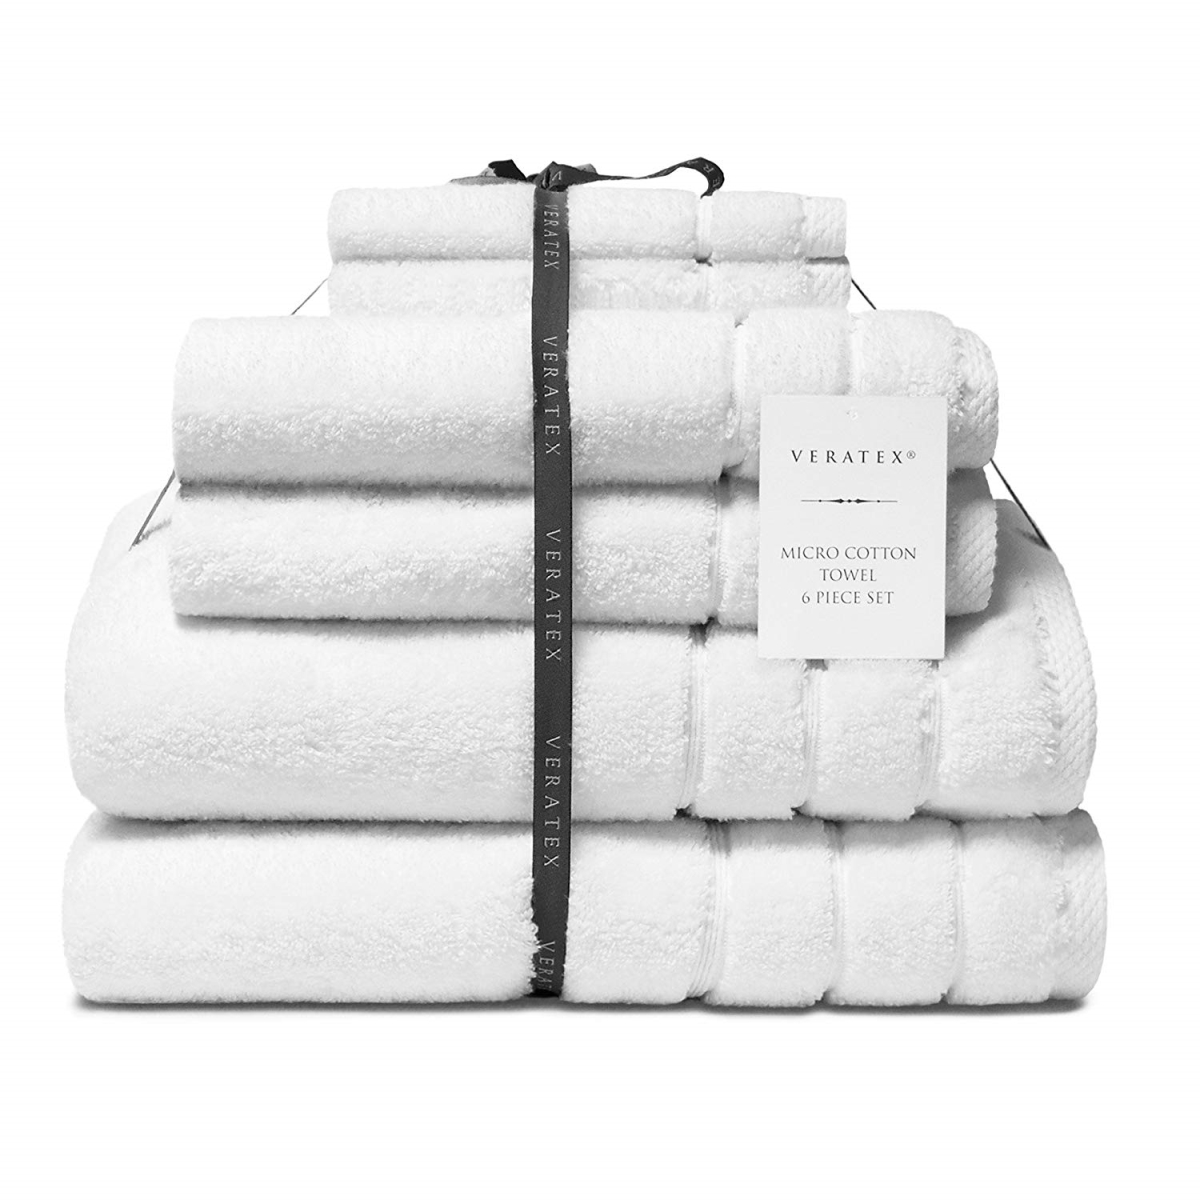 210318towset-wht Turkish Micro Cotton Terry Bath Towel, White - 6 Piece